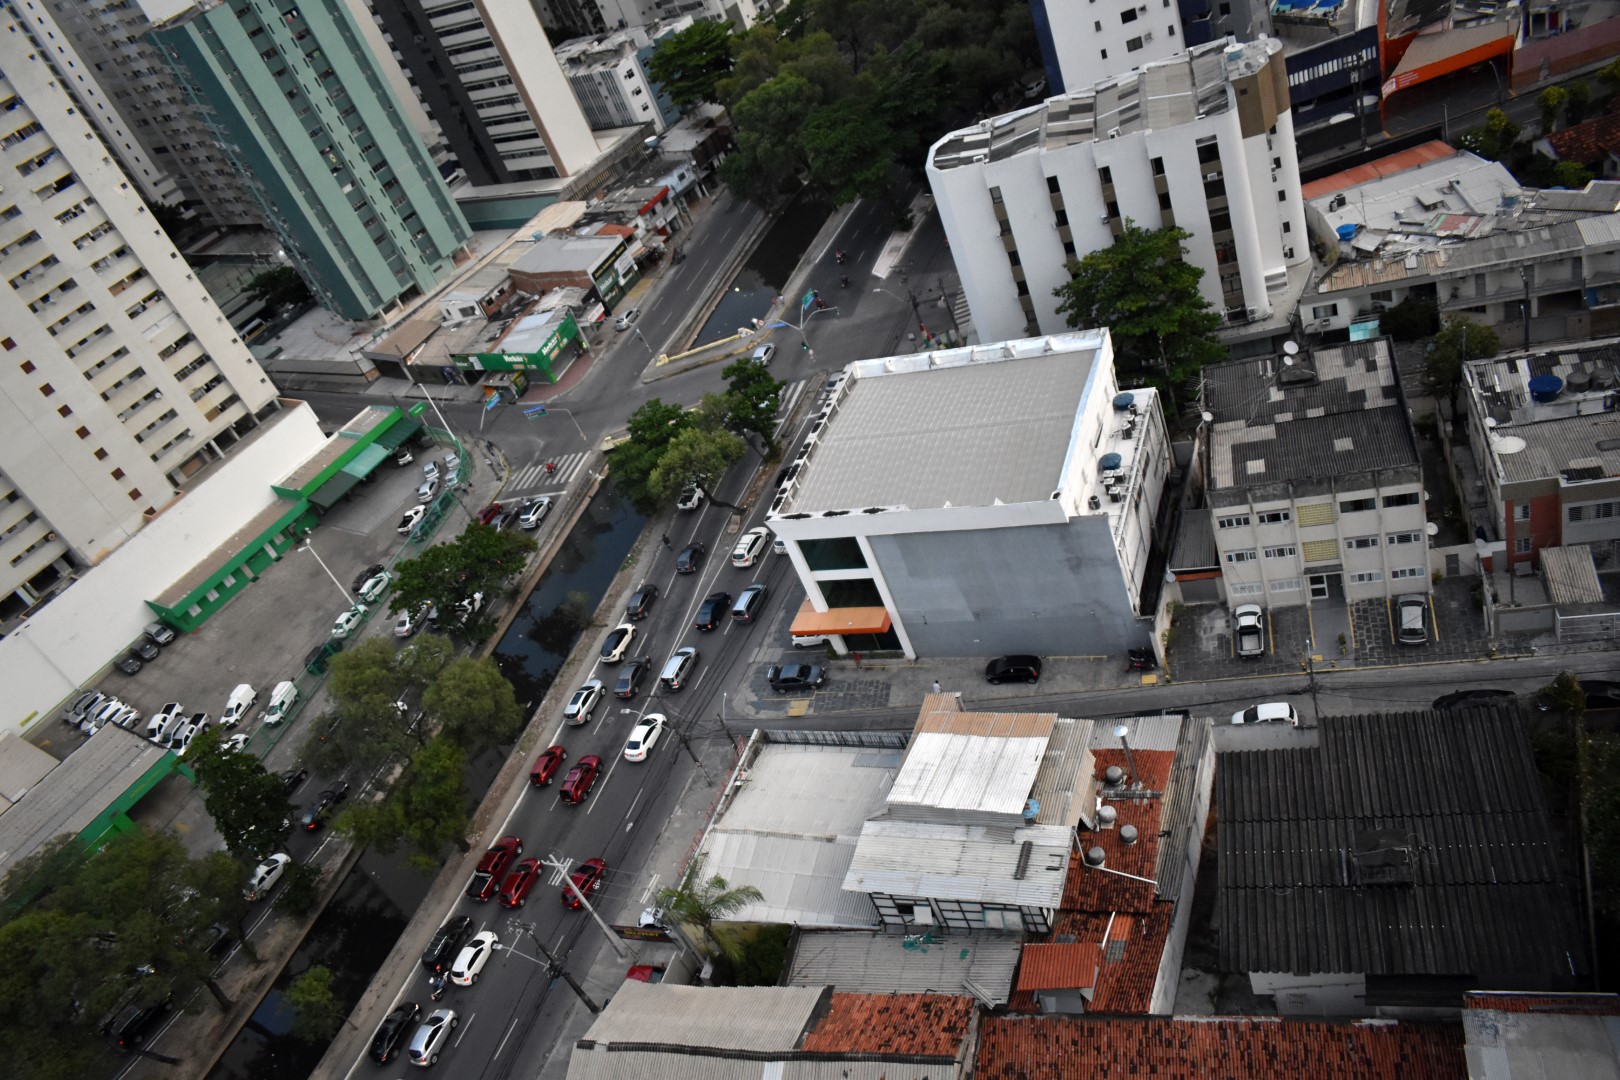 Taken from R. Visc. de Jequitinhonha, Boa Viagem, Recife